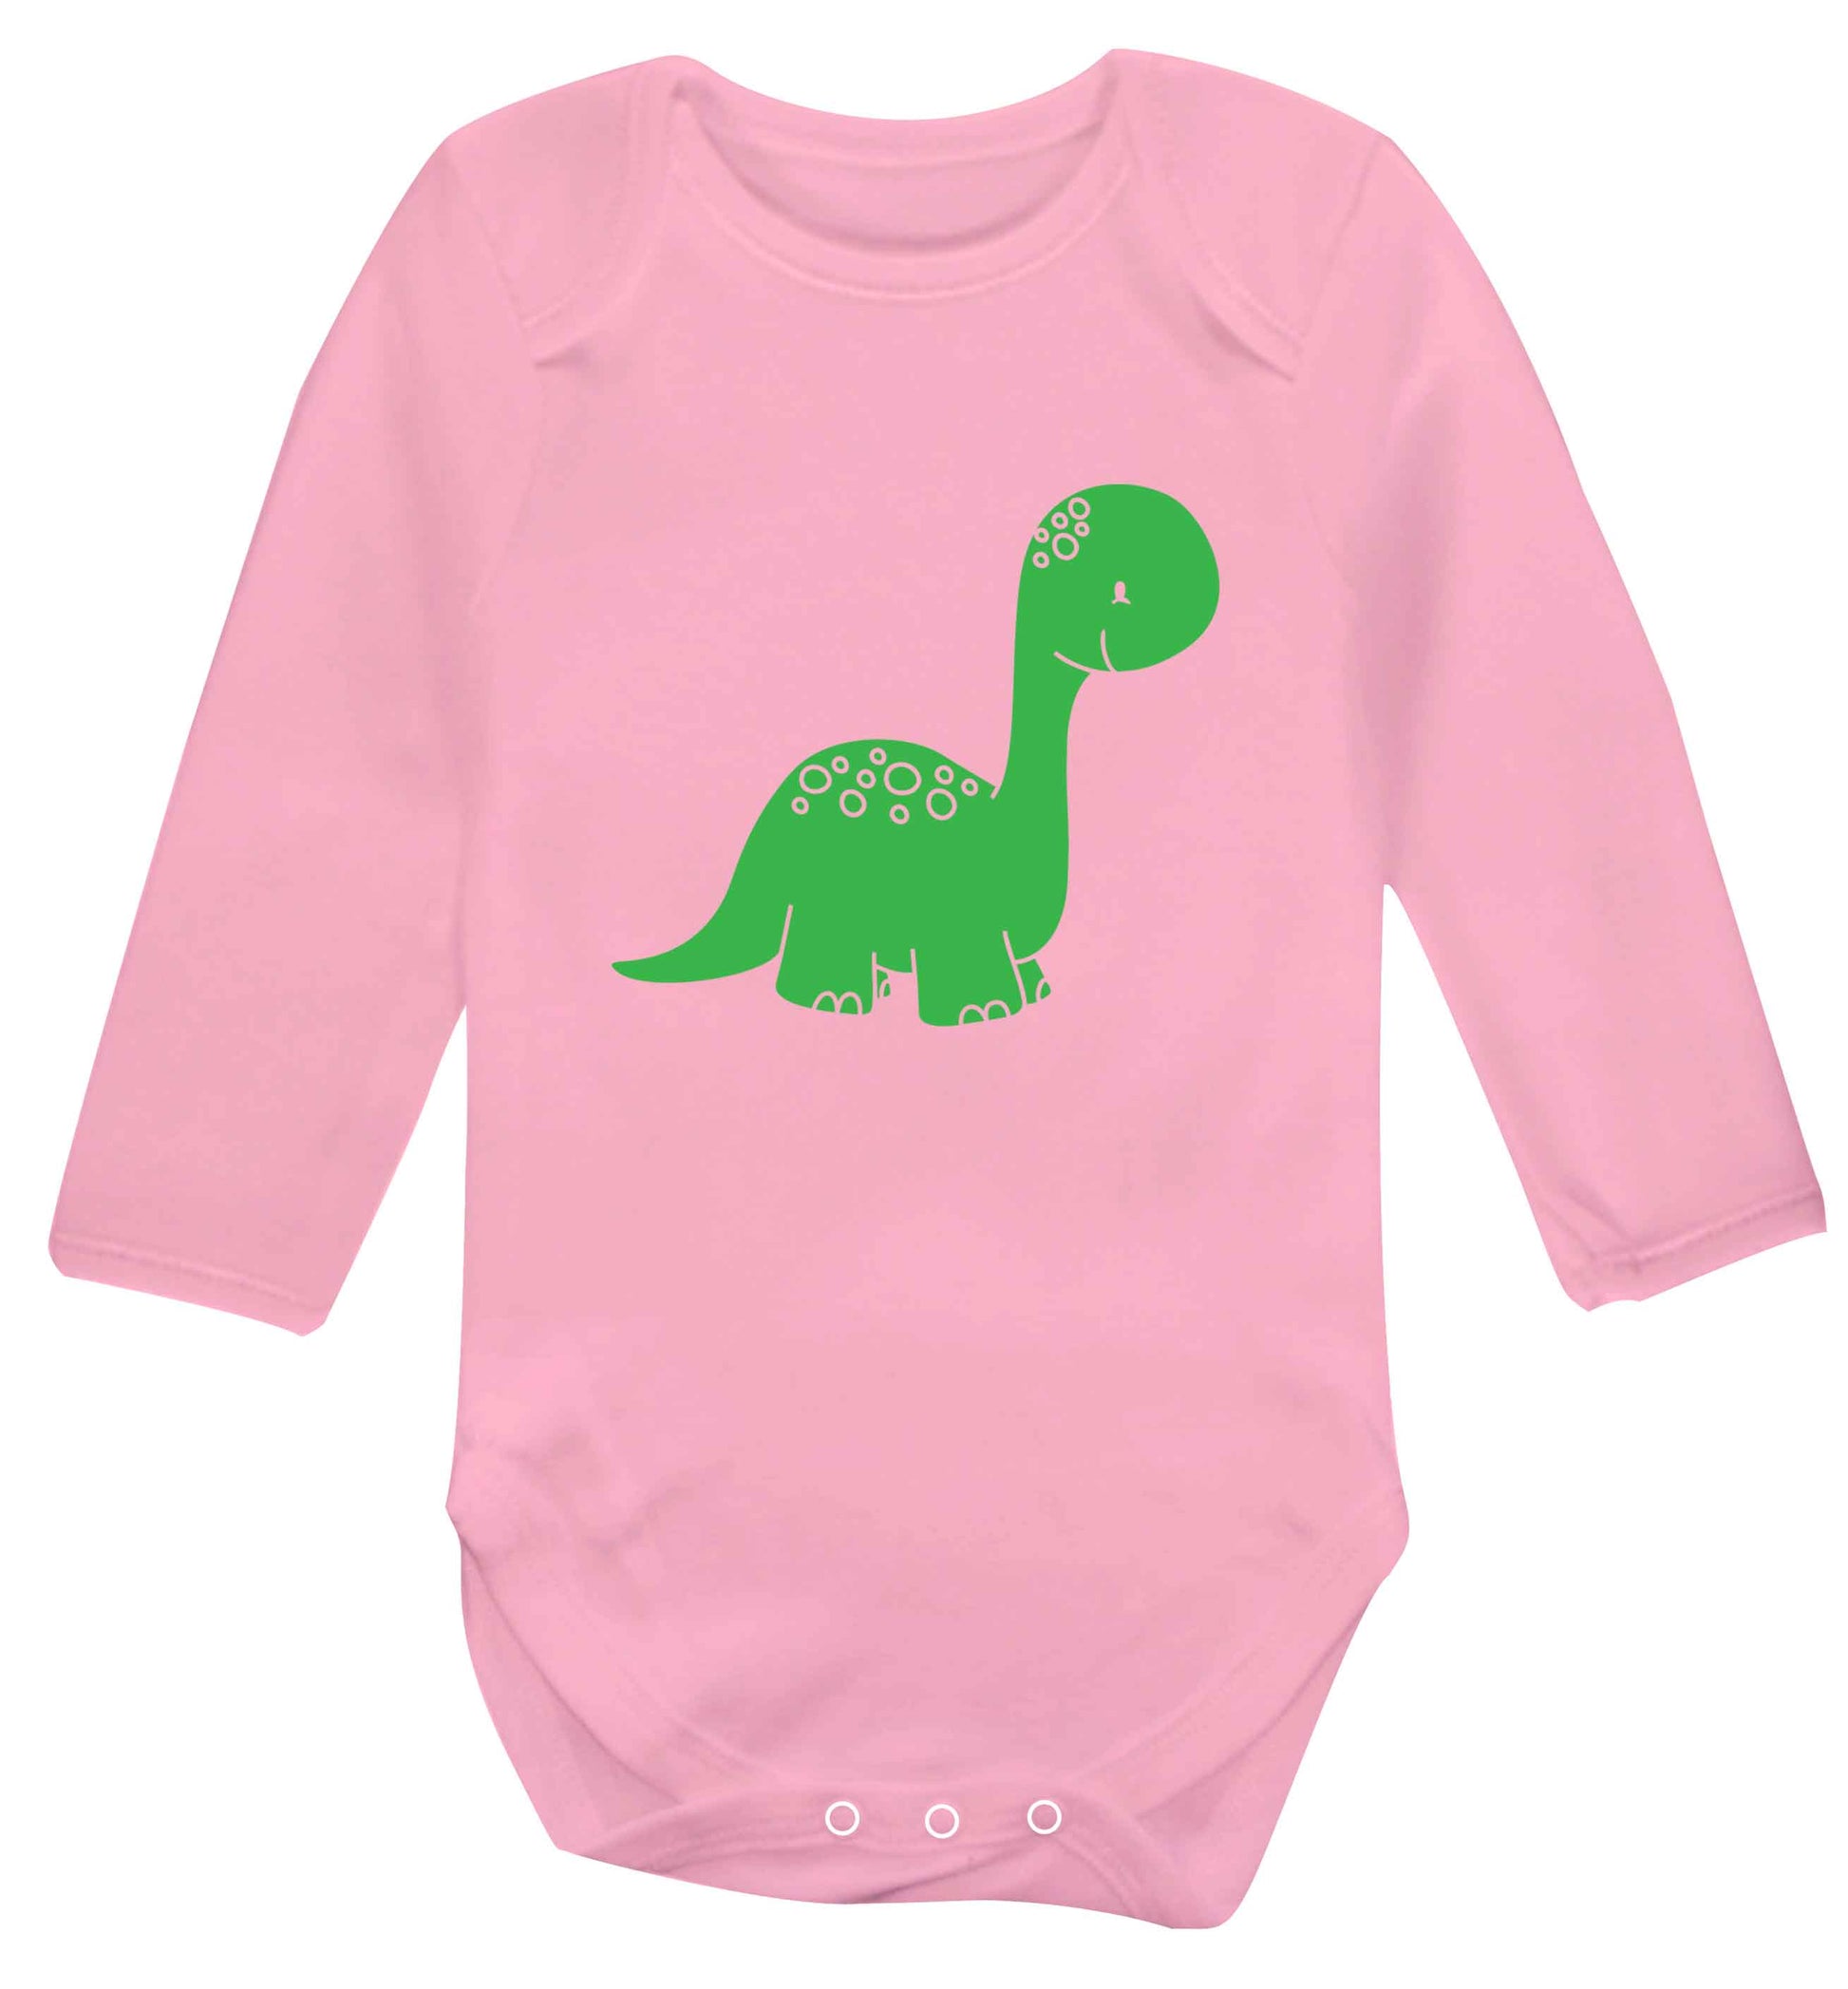 Dinosaur illustration baby vest long sleeved pale pink 6-12 months